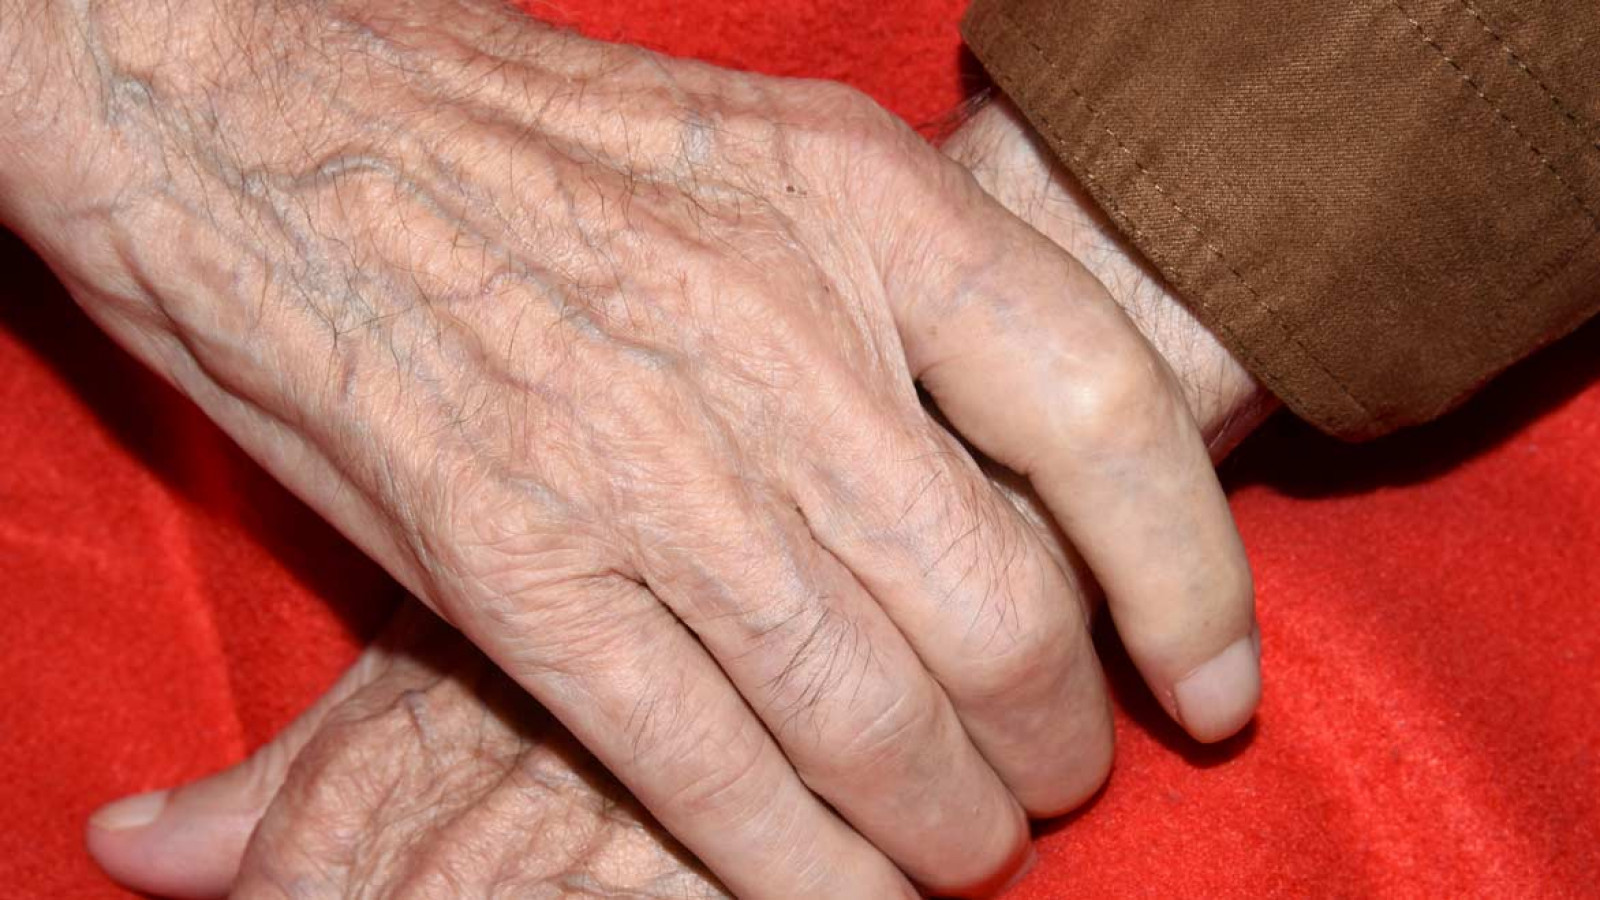 Habilidades prácticas para enfrentarse a la enfermedad de Parkinson